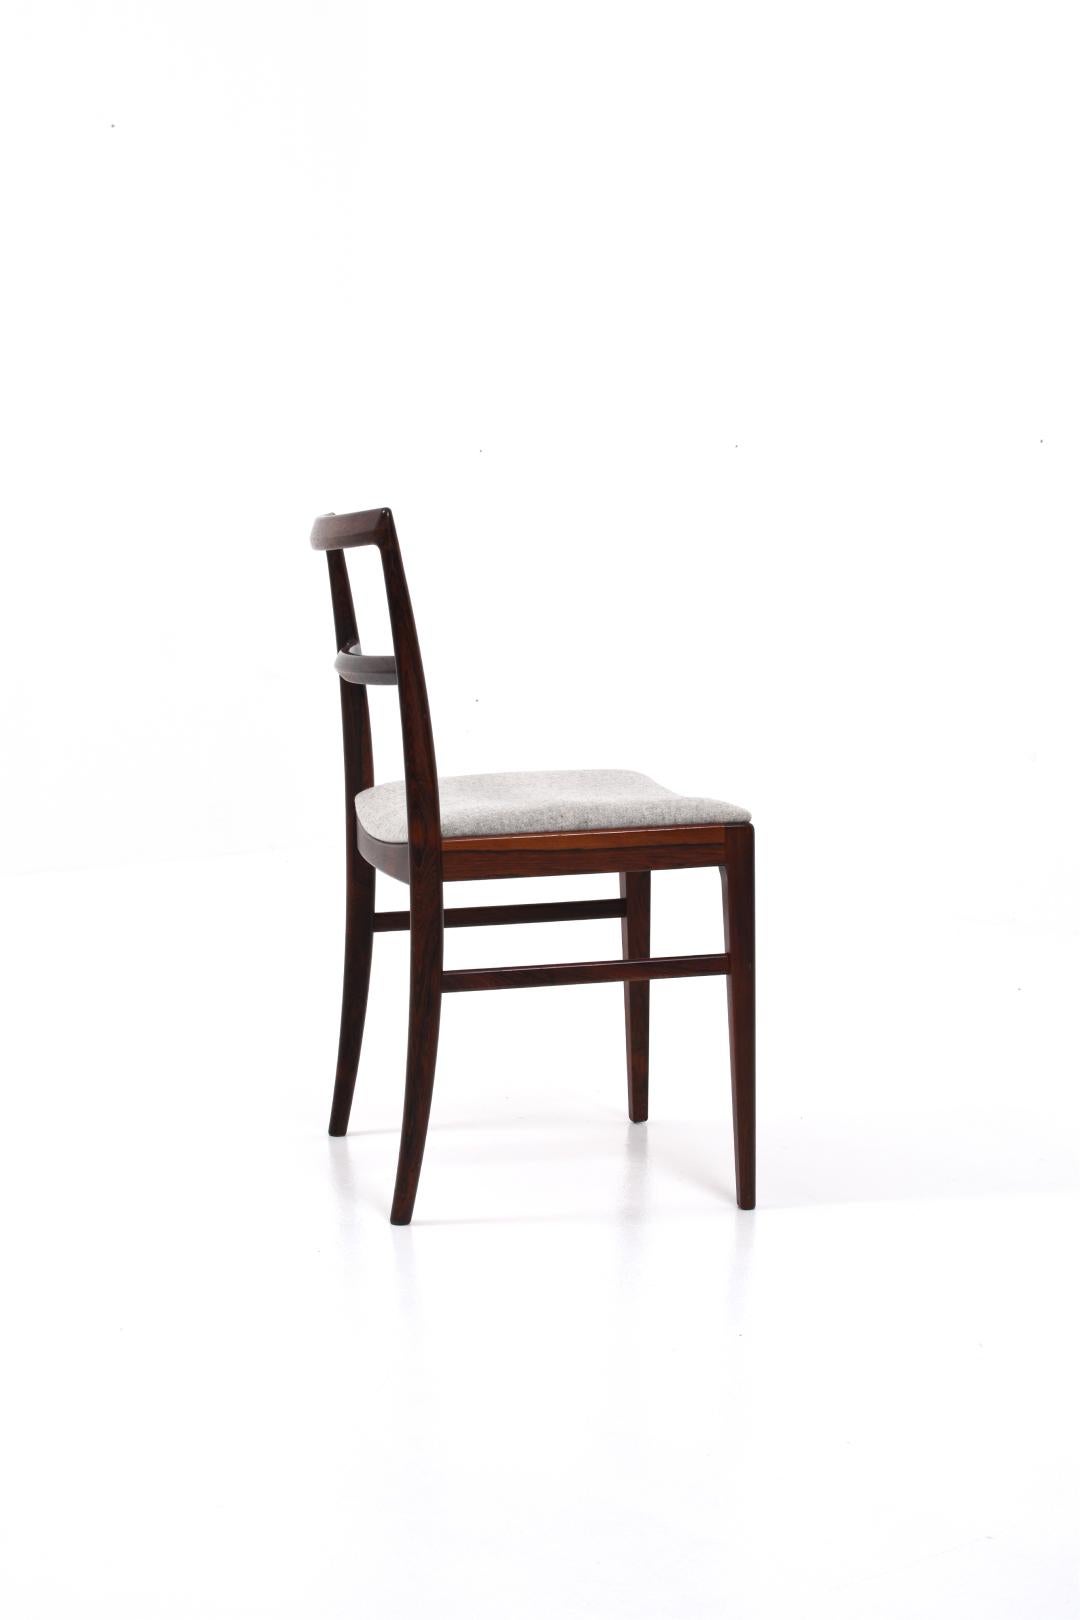 Wool Arne Vodder Model 430 Dining Chairs for Sibast Møbler, set of 4 For Sale